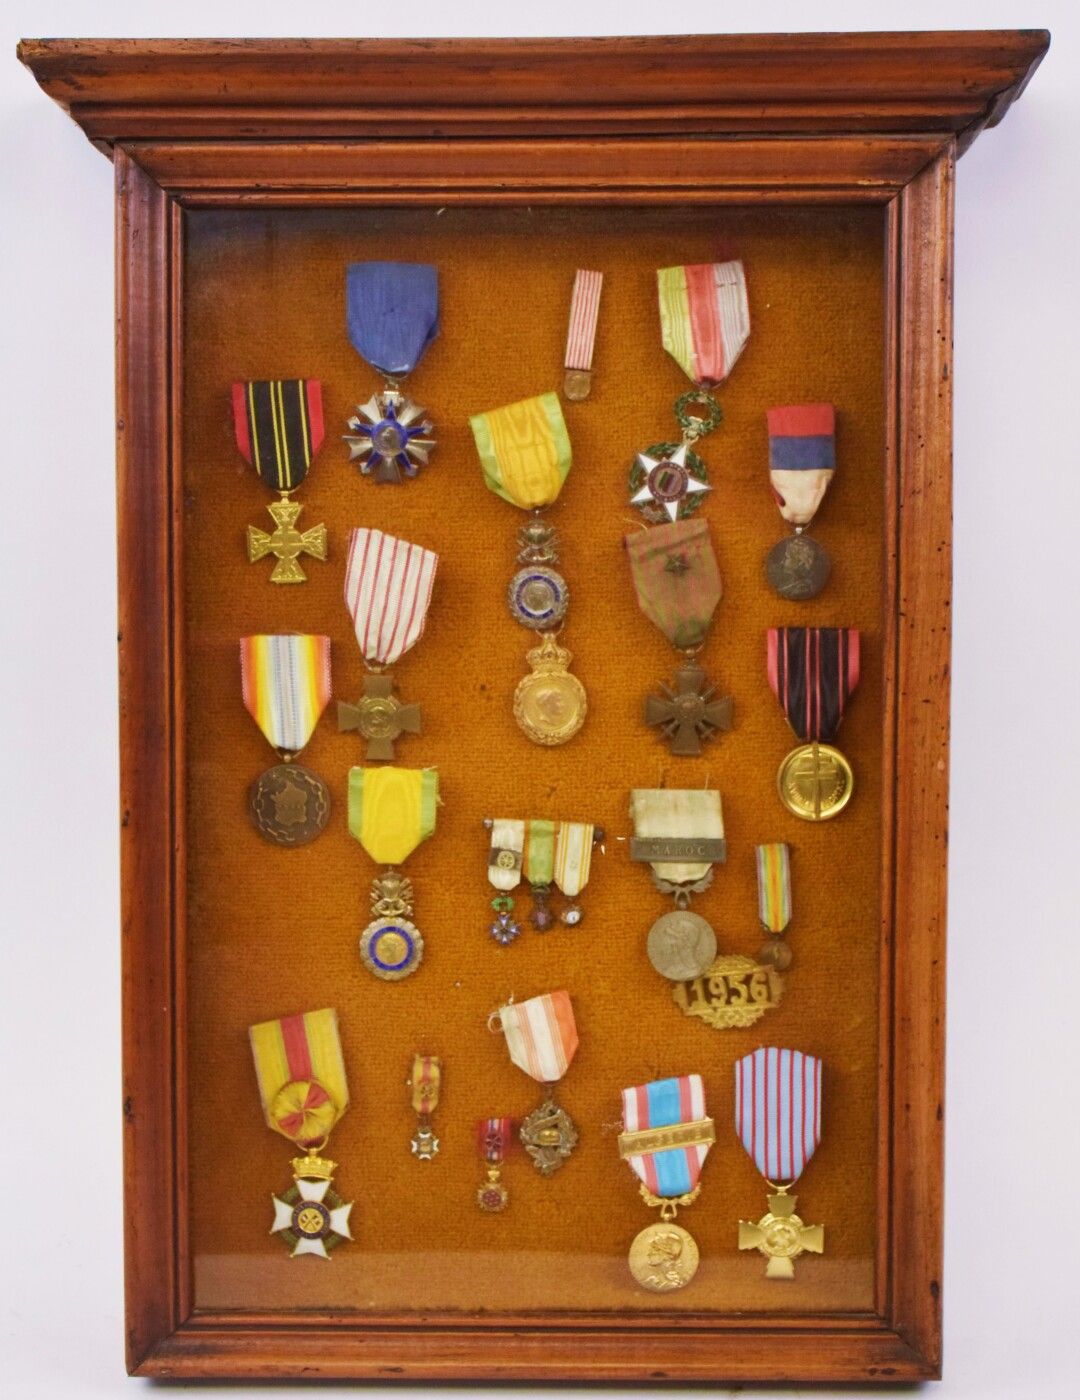 Null [MILITARIA]

Incorniciato con 16 medaglie tra cui: 

- Croce del combattent&hellip;